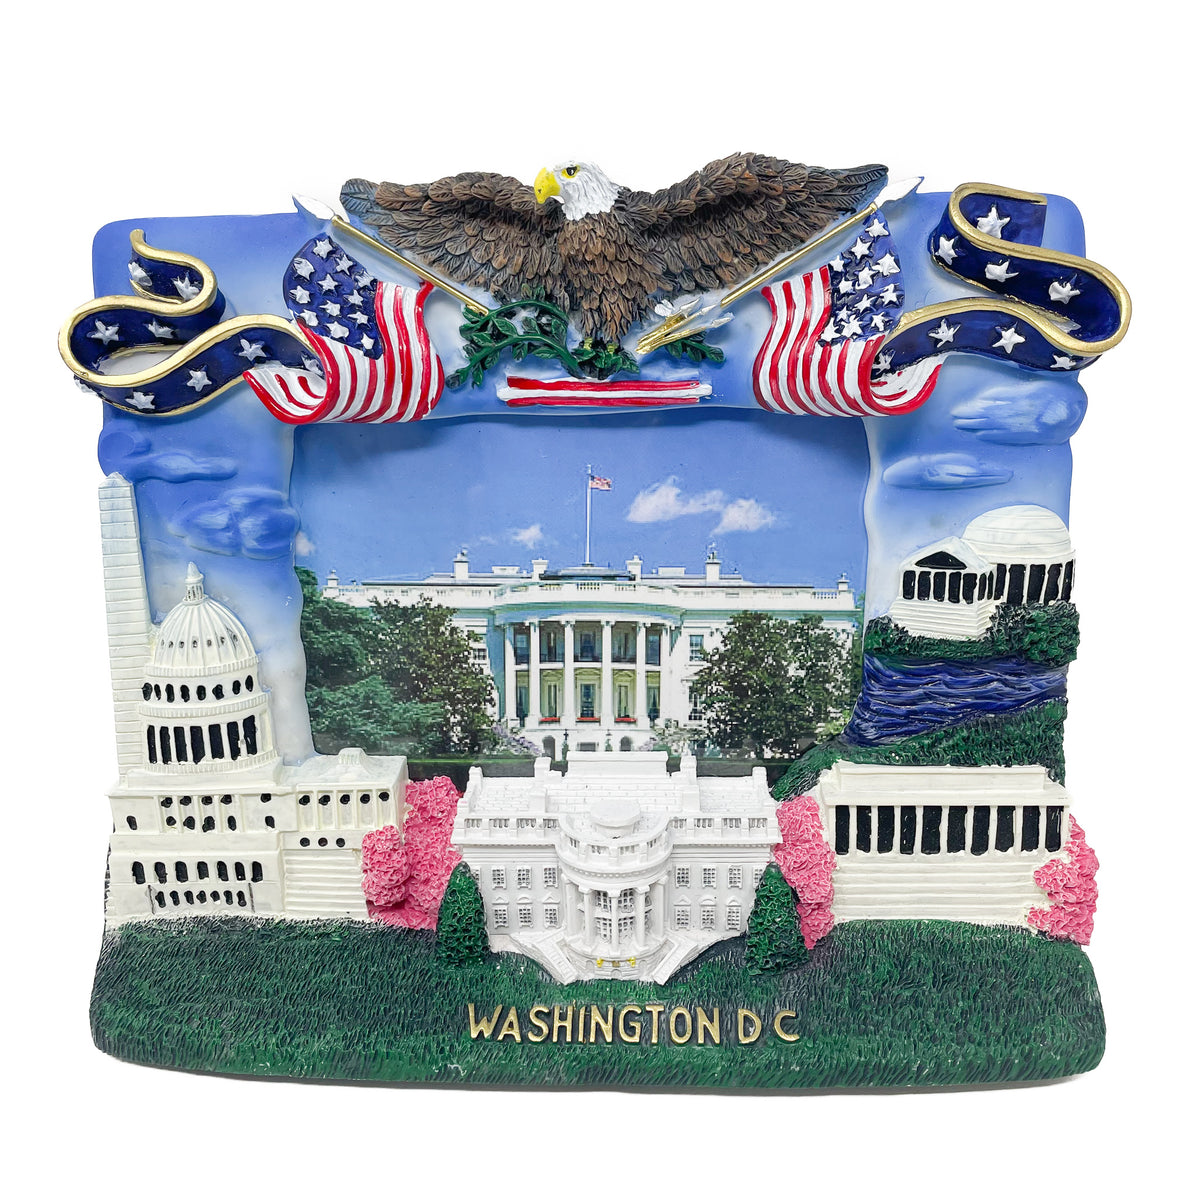 Washington DC Gift Shop & Souvenirs